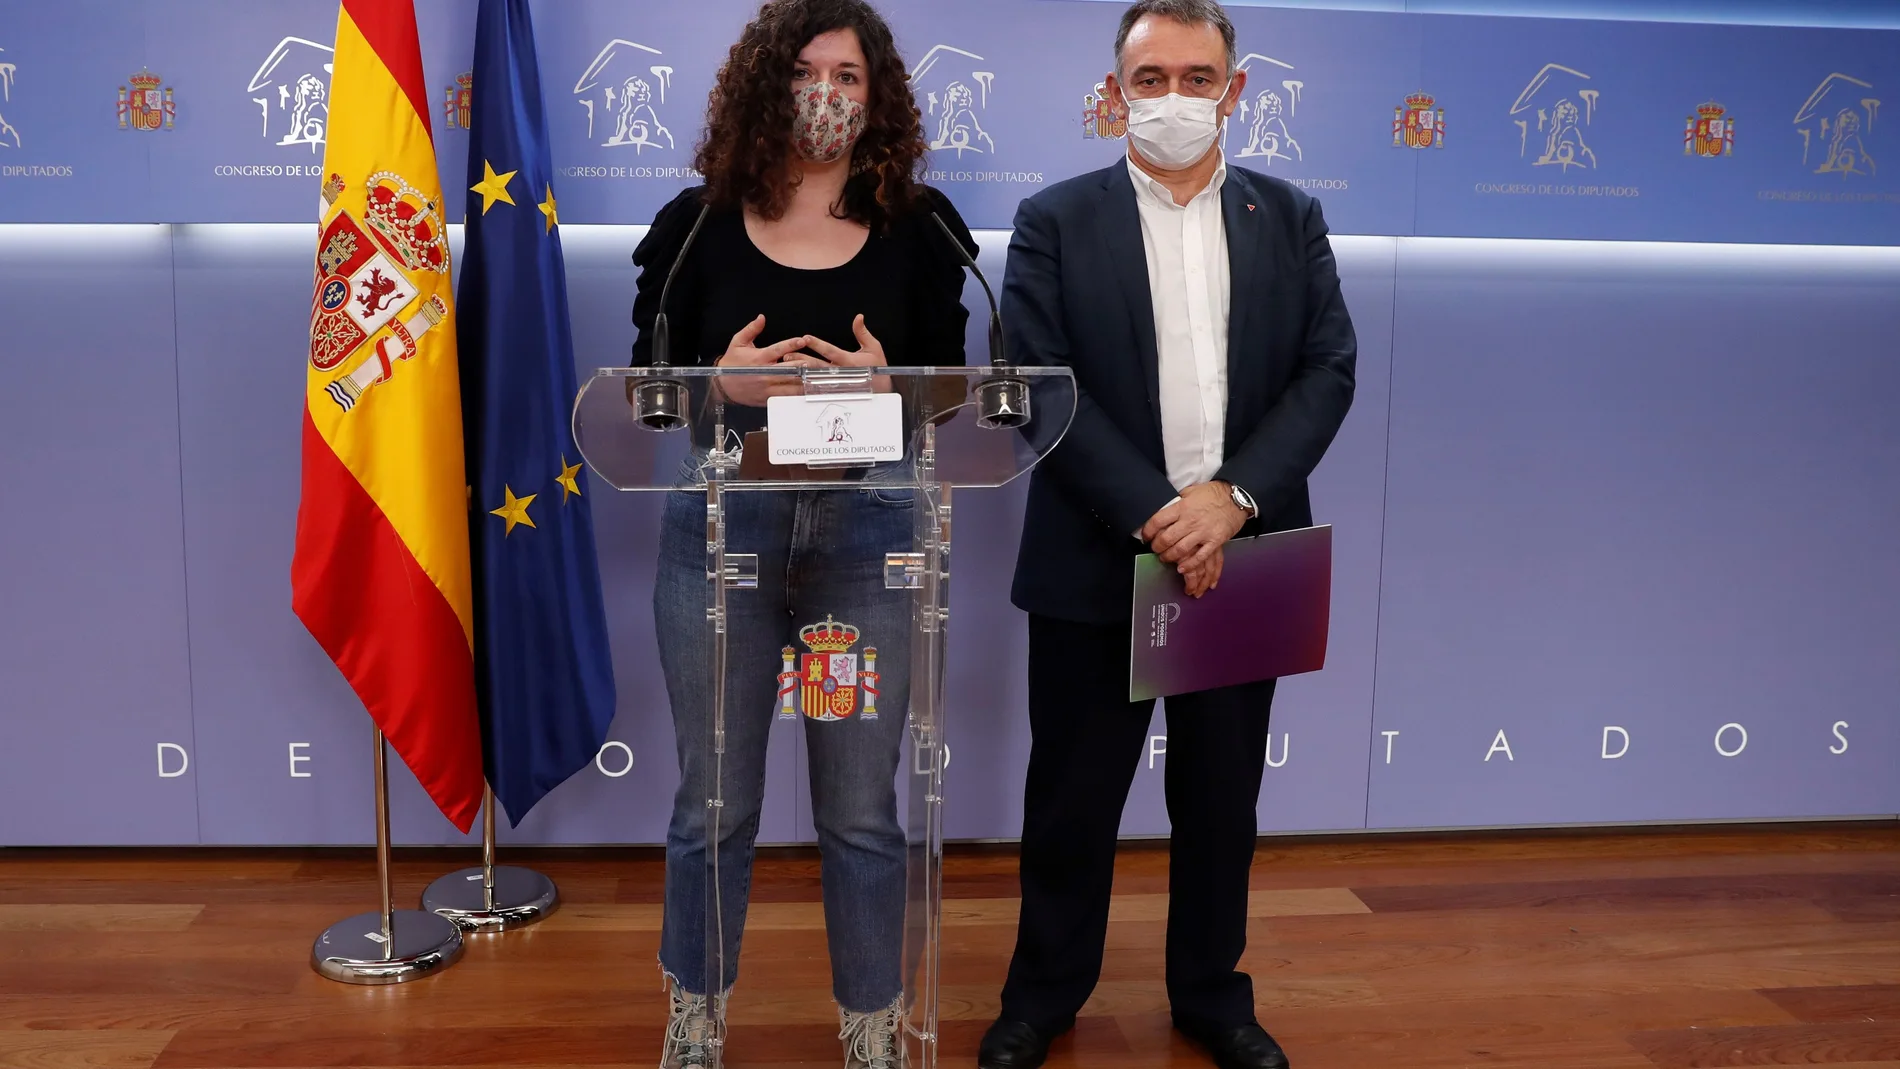 Los diputados de Unidas Podemos Sofía Castañón y Enrique Santiago dan una rueda de prensa este miércoles en el Congreso de los Diputados